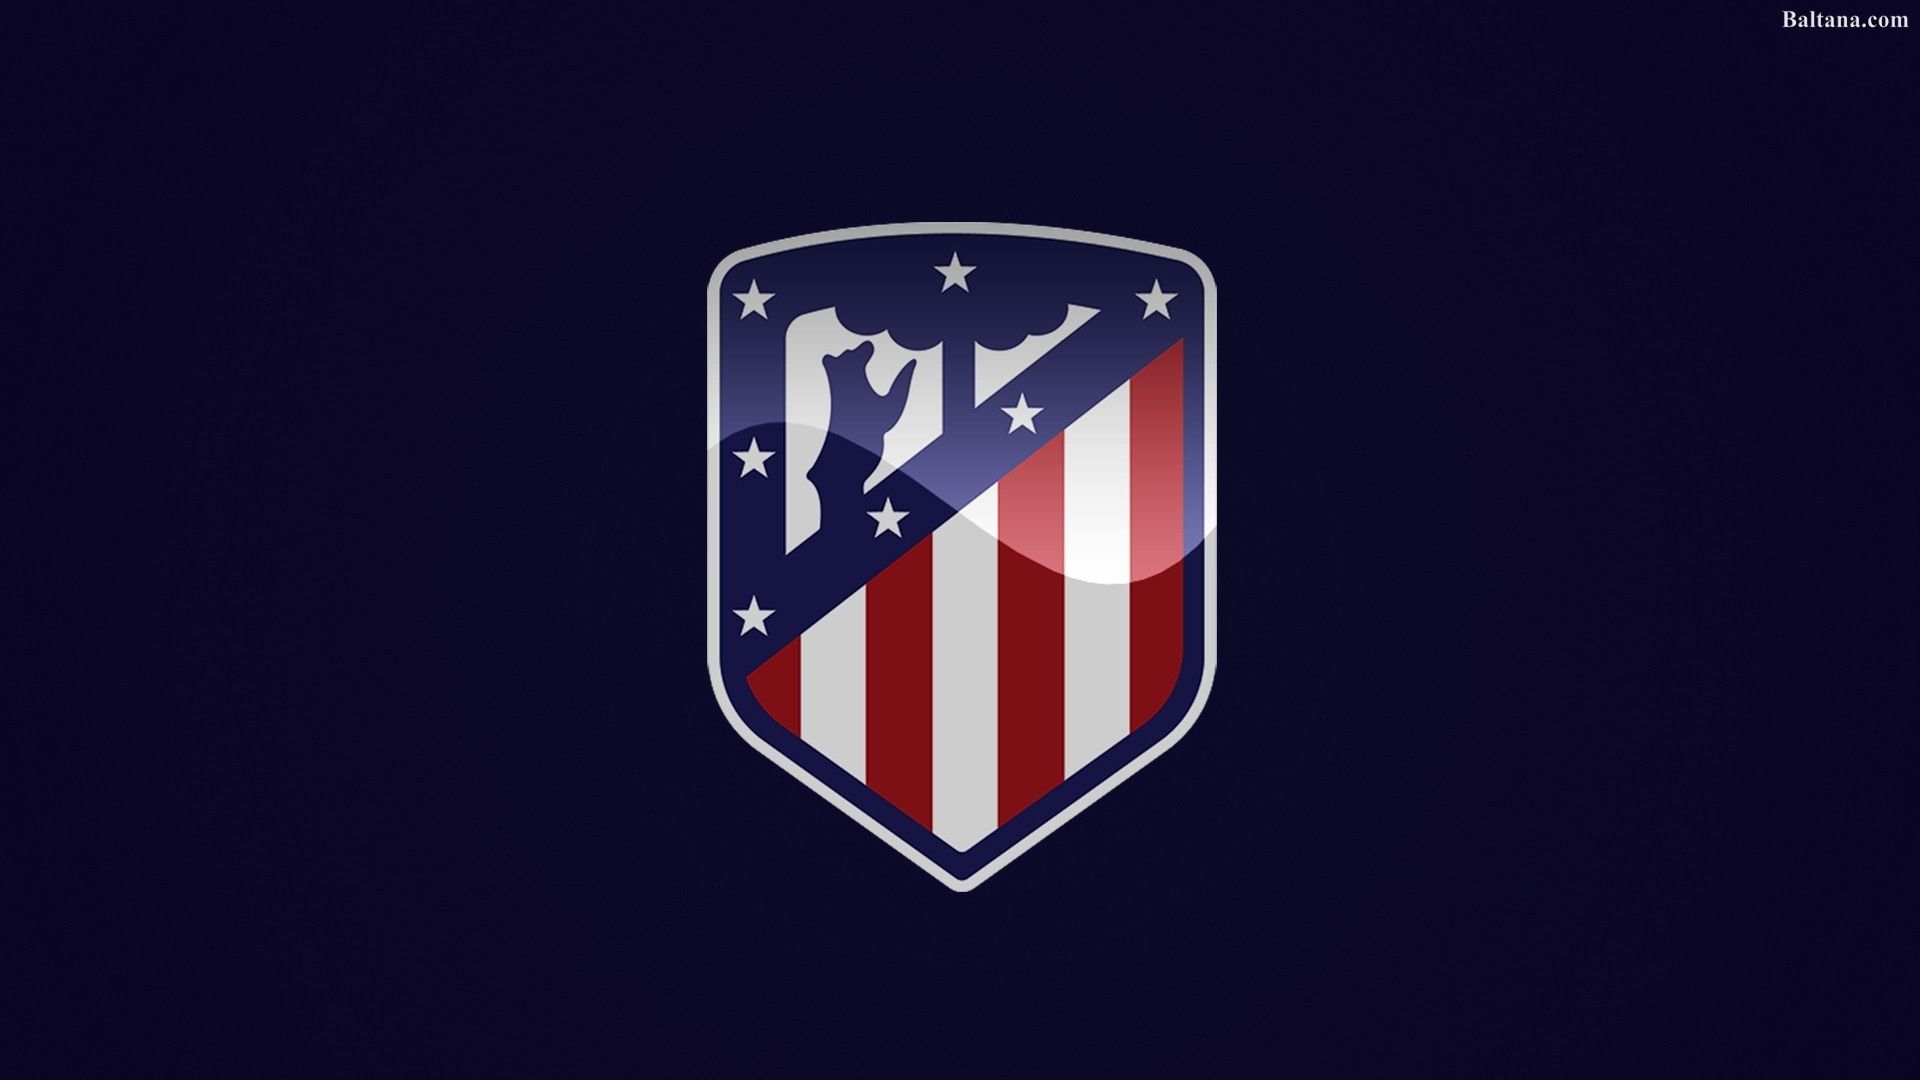 Fondo de pantalla de alta definición del Atlético de Madrid 33897 - Baltana